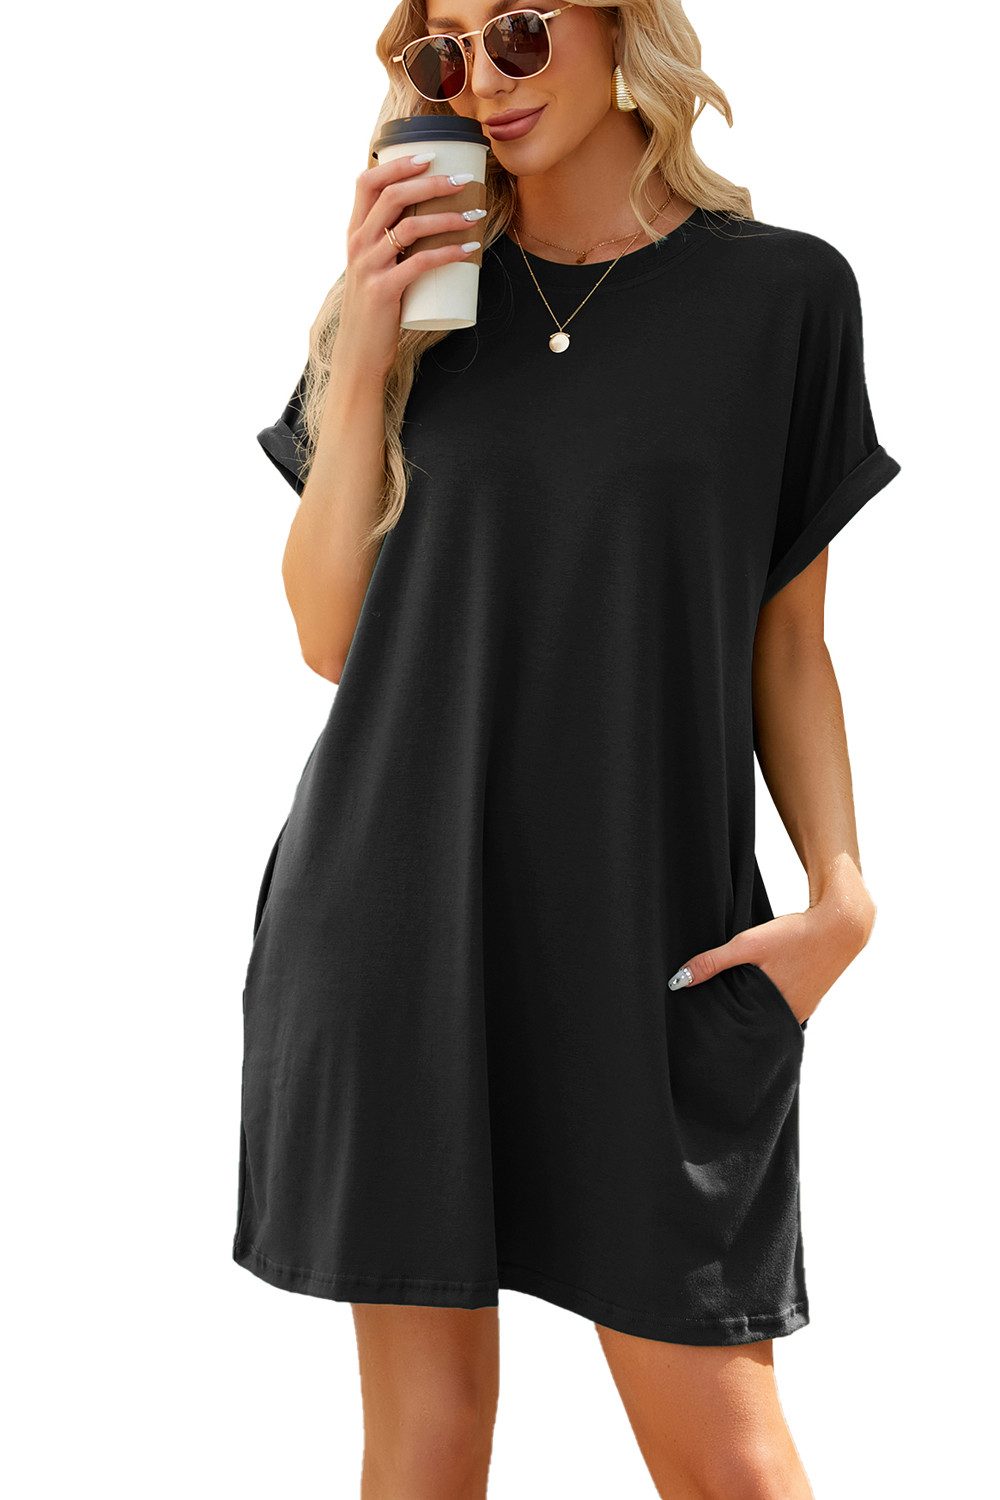 B.X Sommerkleid Damen Freizeit Minikleid einfarbig Strandkleid Rundhals Blusenkleid T-Shirt-Kleid lockere Passform schwingendes Cocktailkleid Taschenkleid